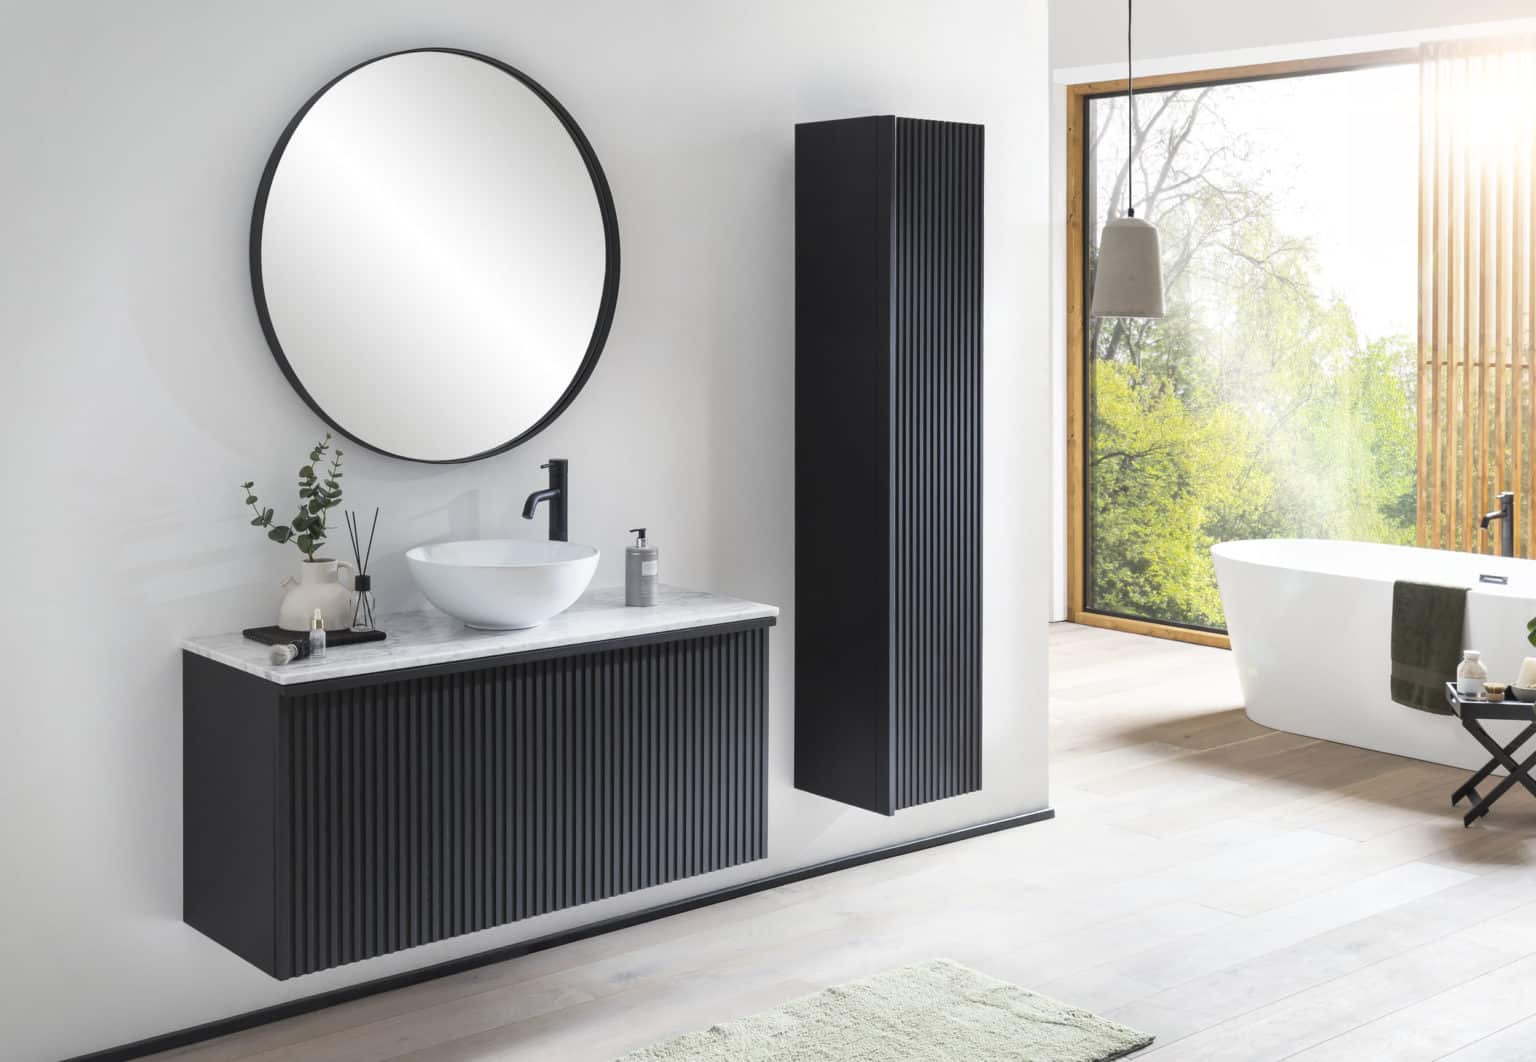 Een hangend badkamermeubel van massief hout in zwart met houten latjes aan de voorkant. Met boven het meubel een zwarte spiegel en rechtst naast het badkamermeubel met latjes een kolomkast